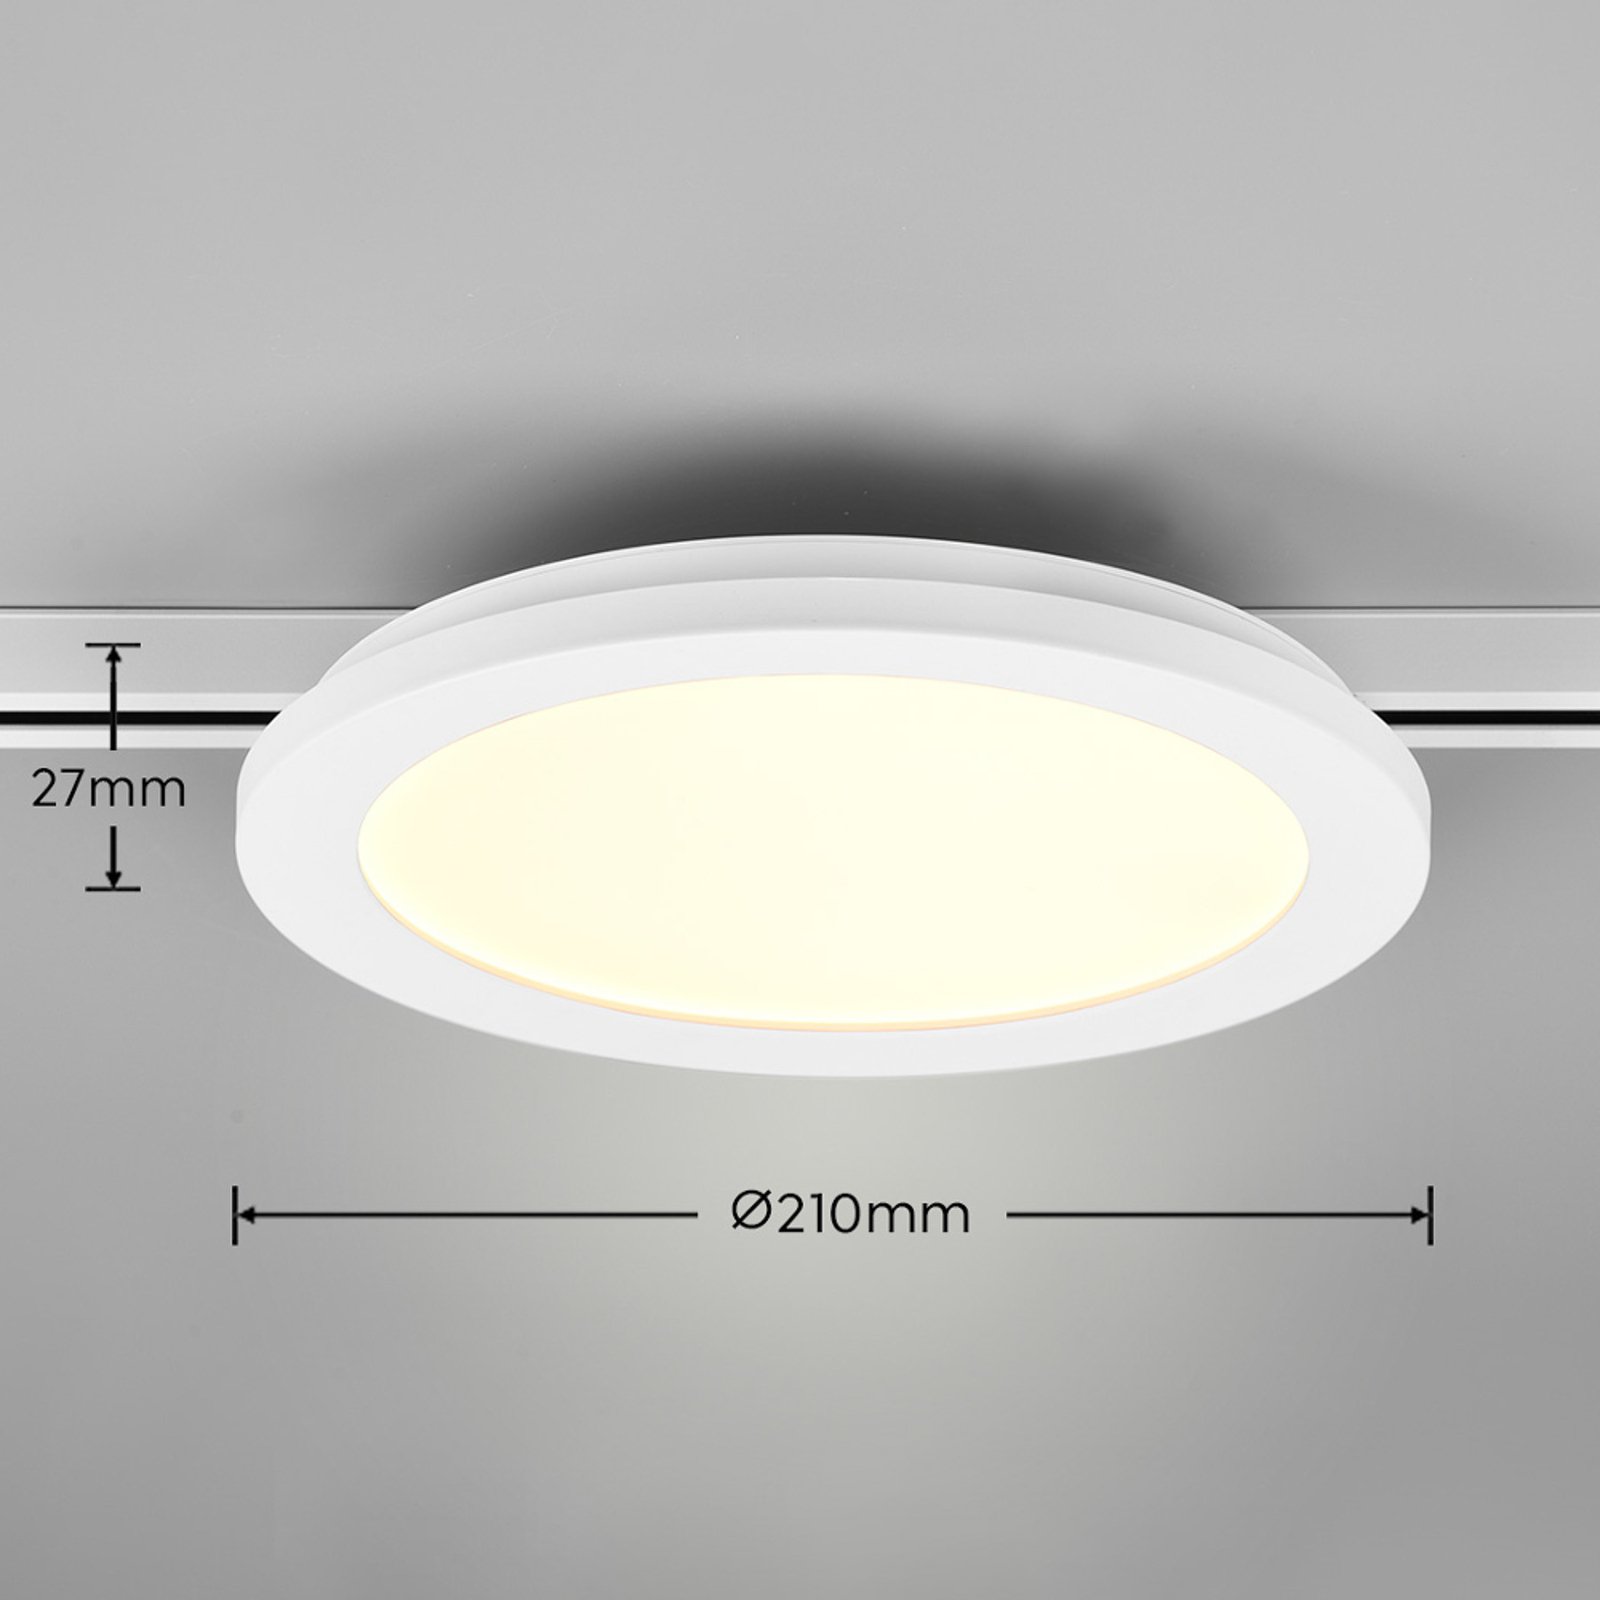 LED stropné svietidlo Camillus DUOline, Ø 26 cm, biele